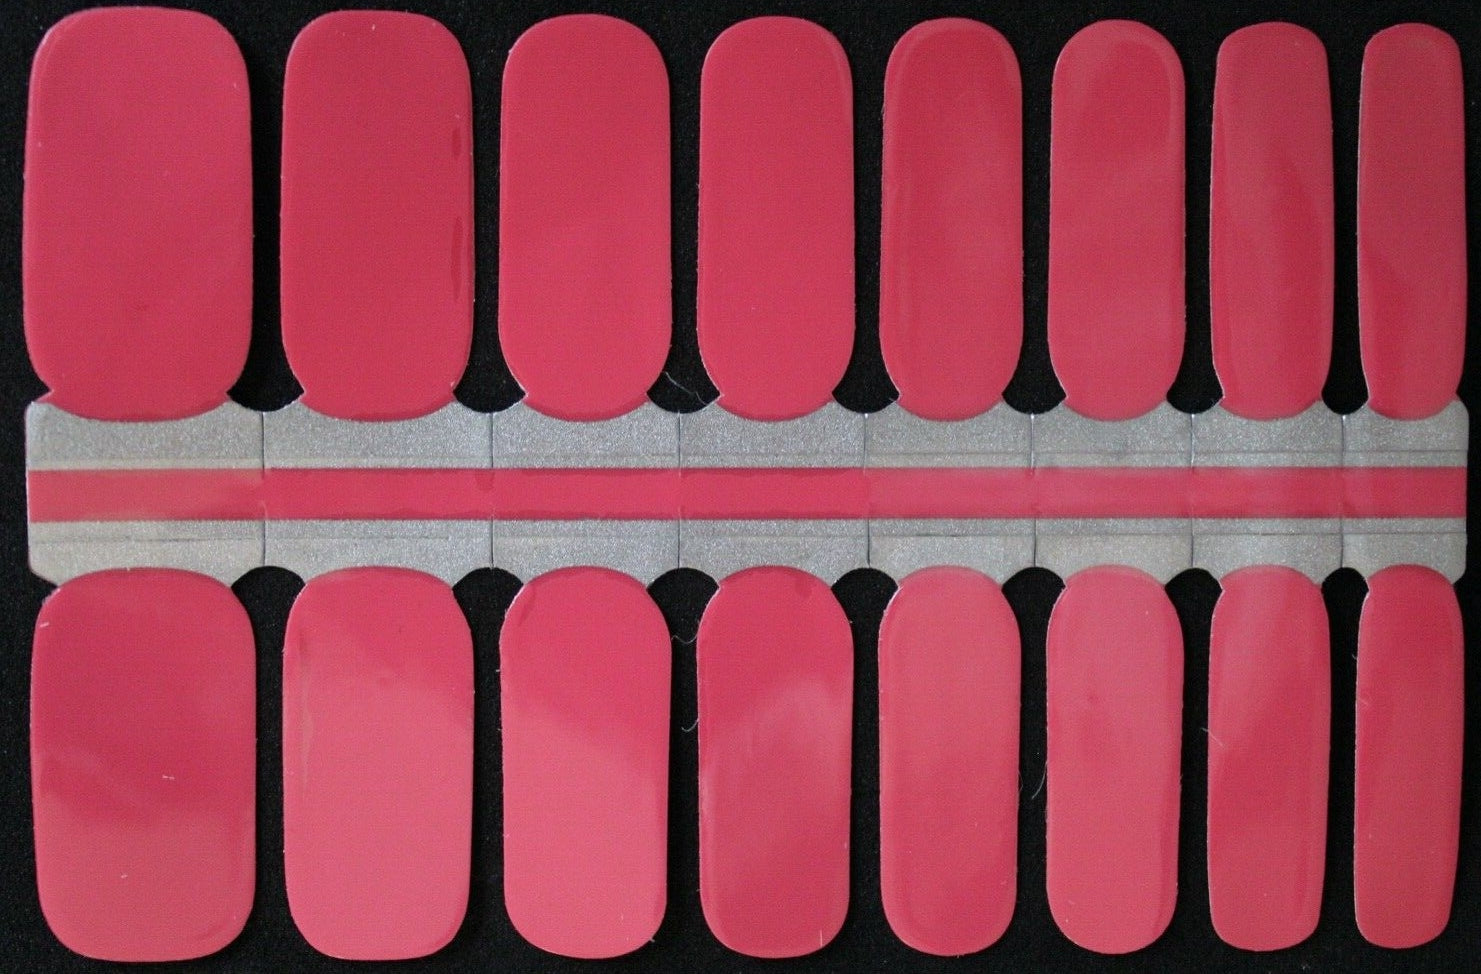 Pink coral nail sticker wraps polish